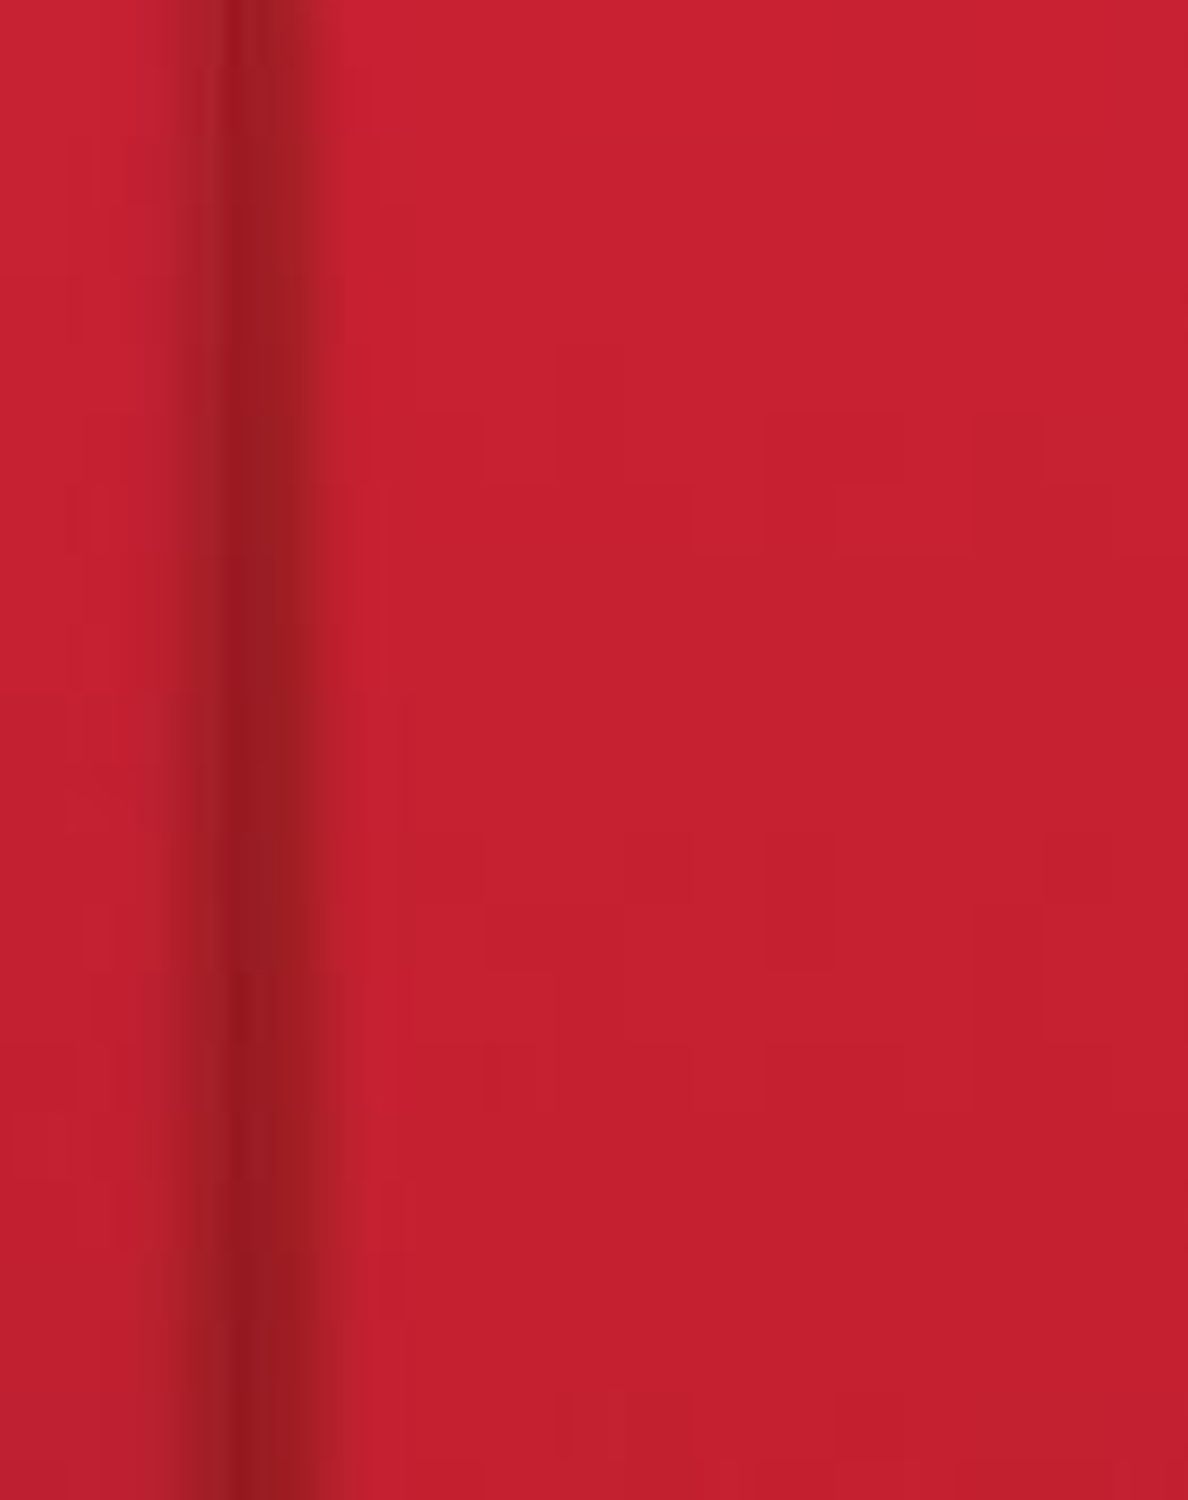 Tischtuchrolle - uni, 1,18 x 5 m, rot